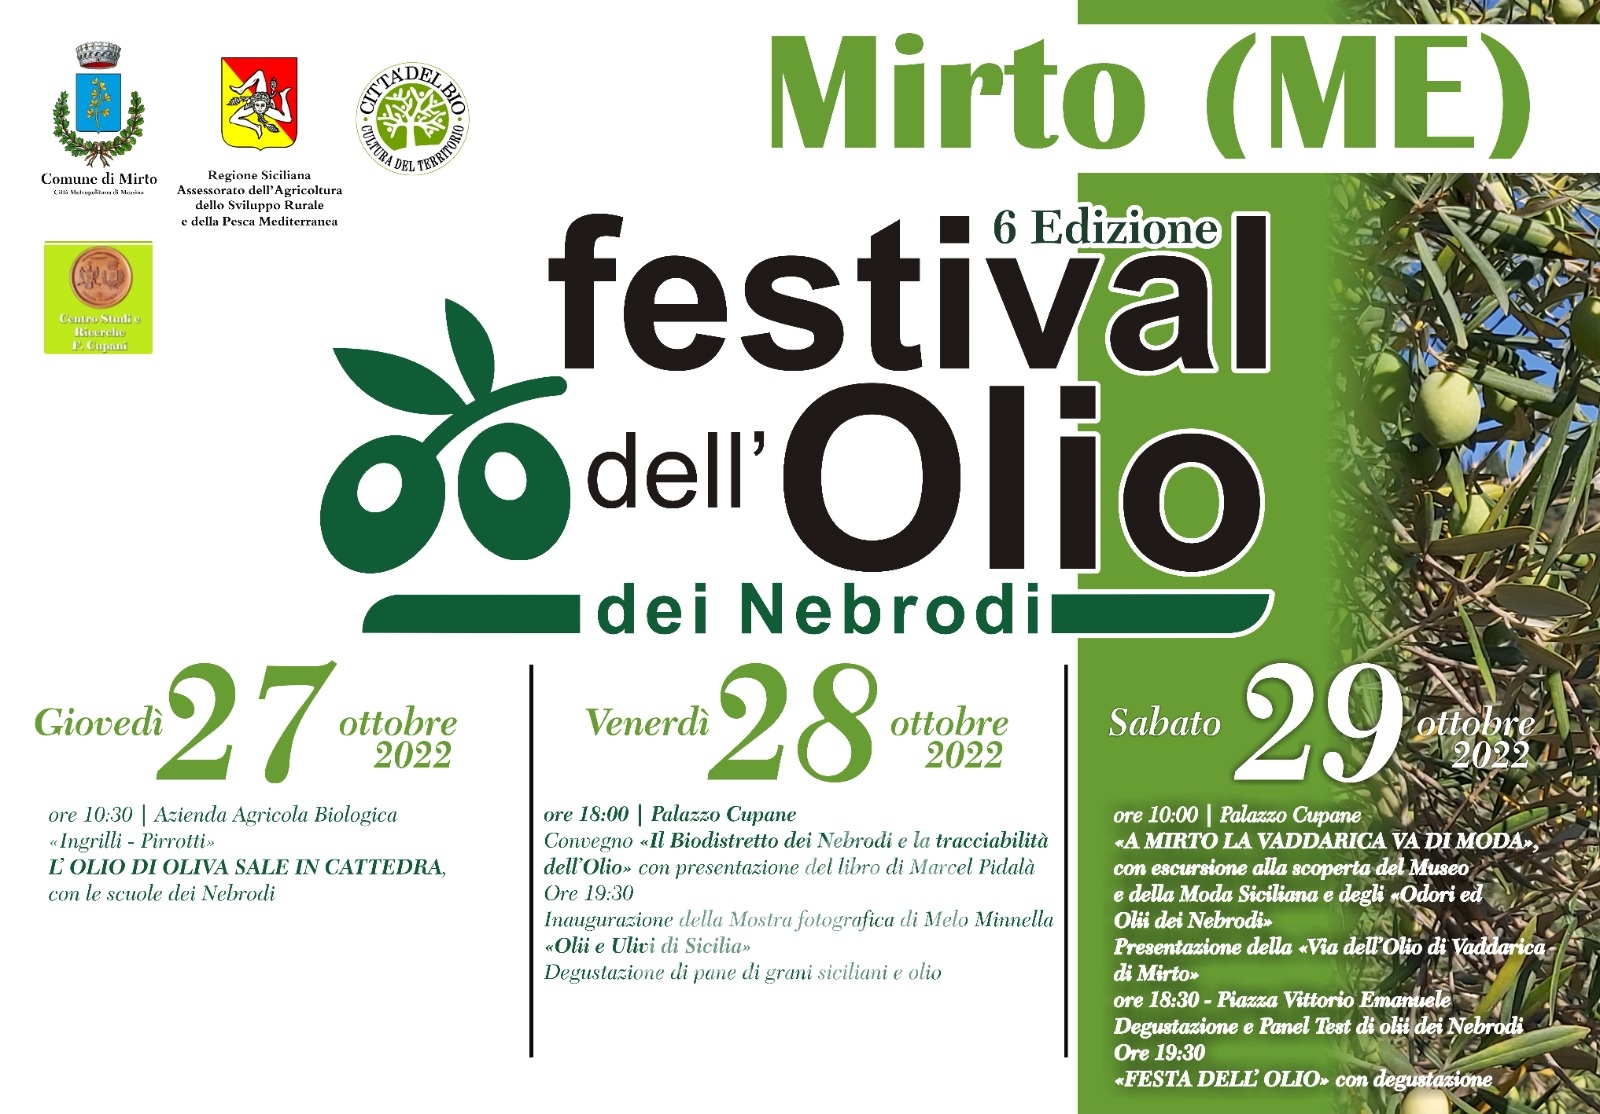 Mirto – Sesto Festival dell’Olio di Oliva dei Nebrodi, appuntamento nelle giornate del 27, 28 e 29 ottobre